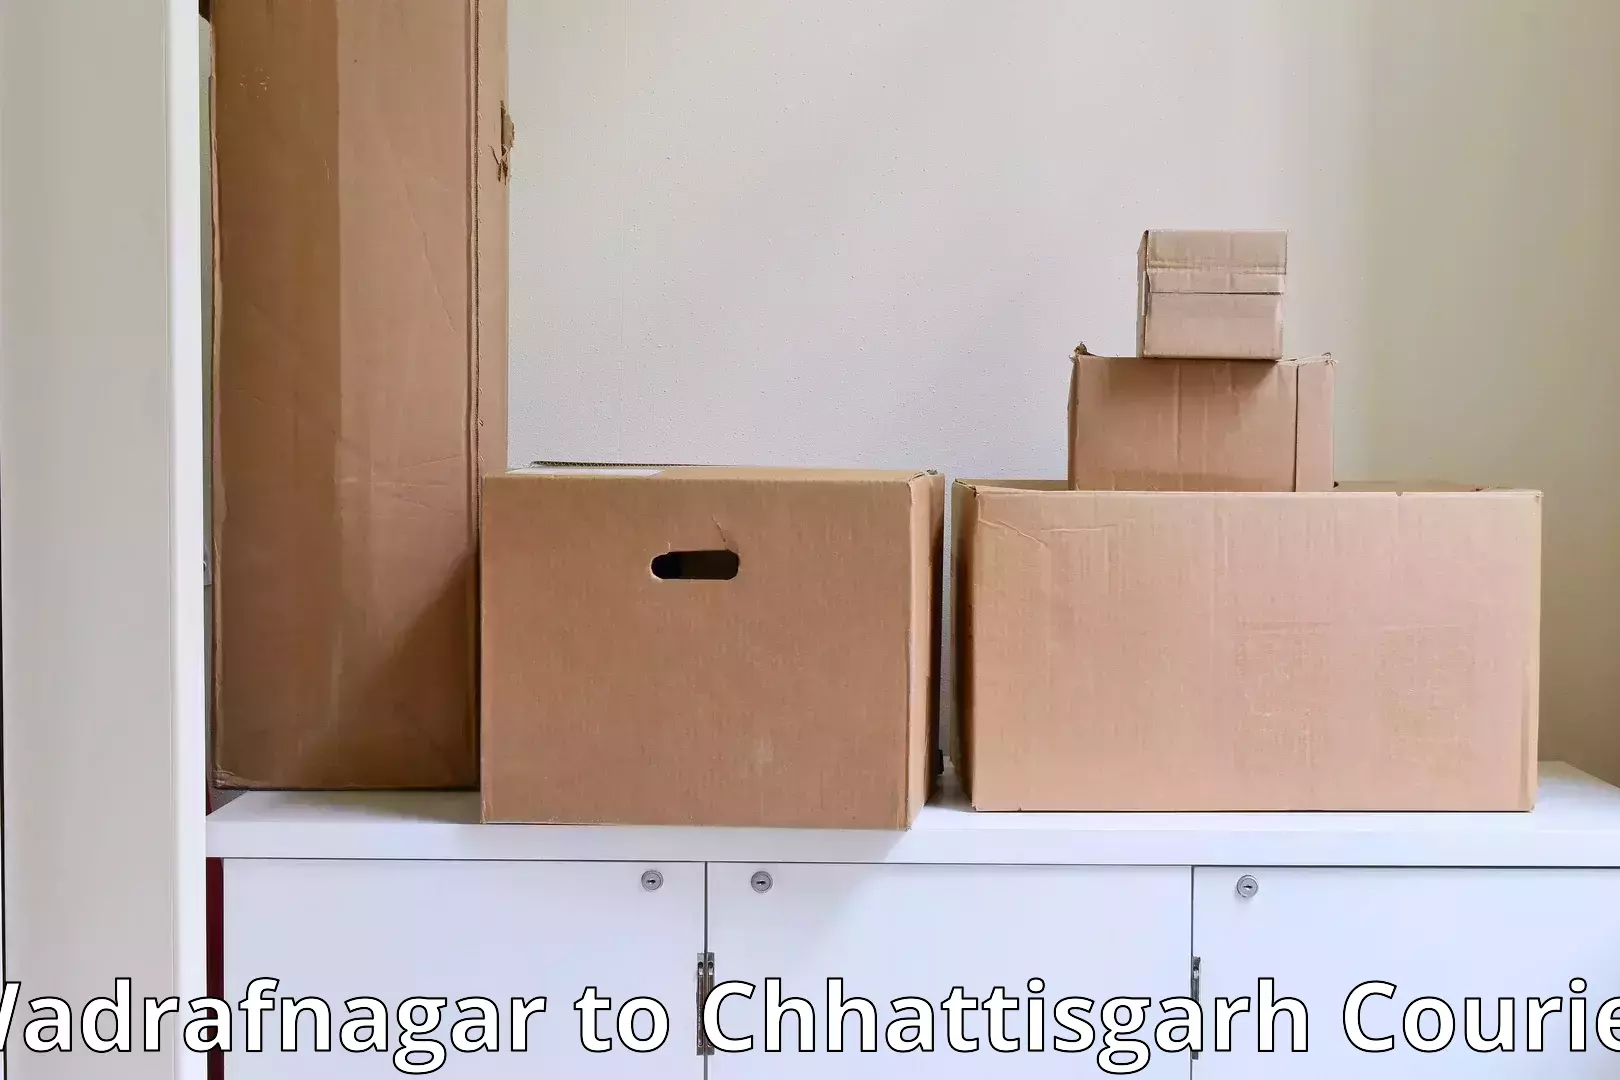 Local furniture movers Wadrafnagar to Sakti